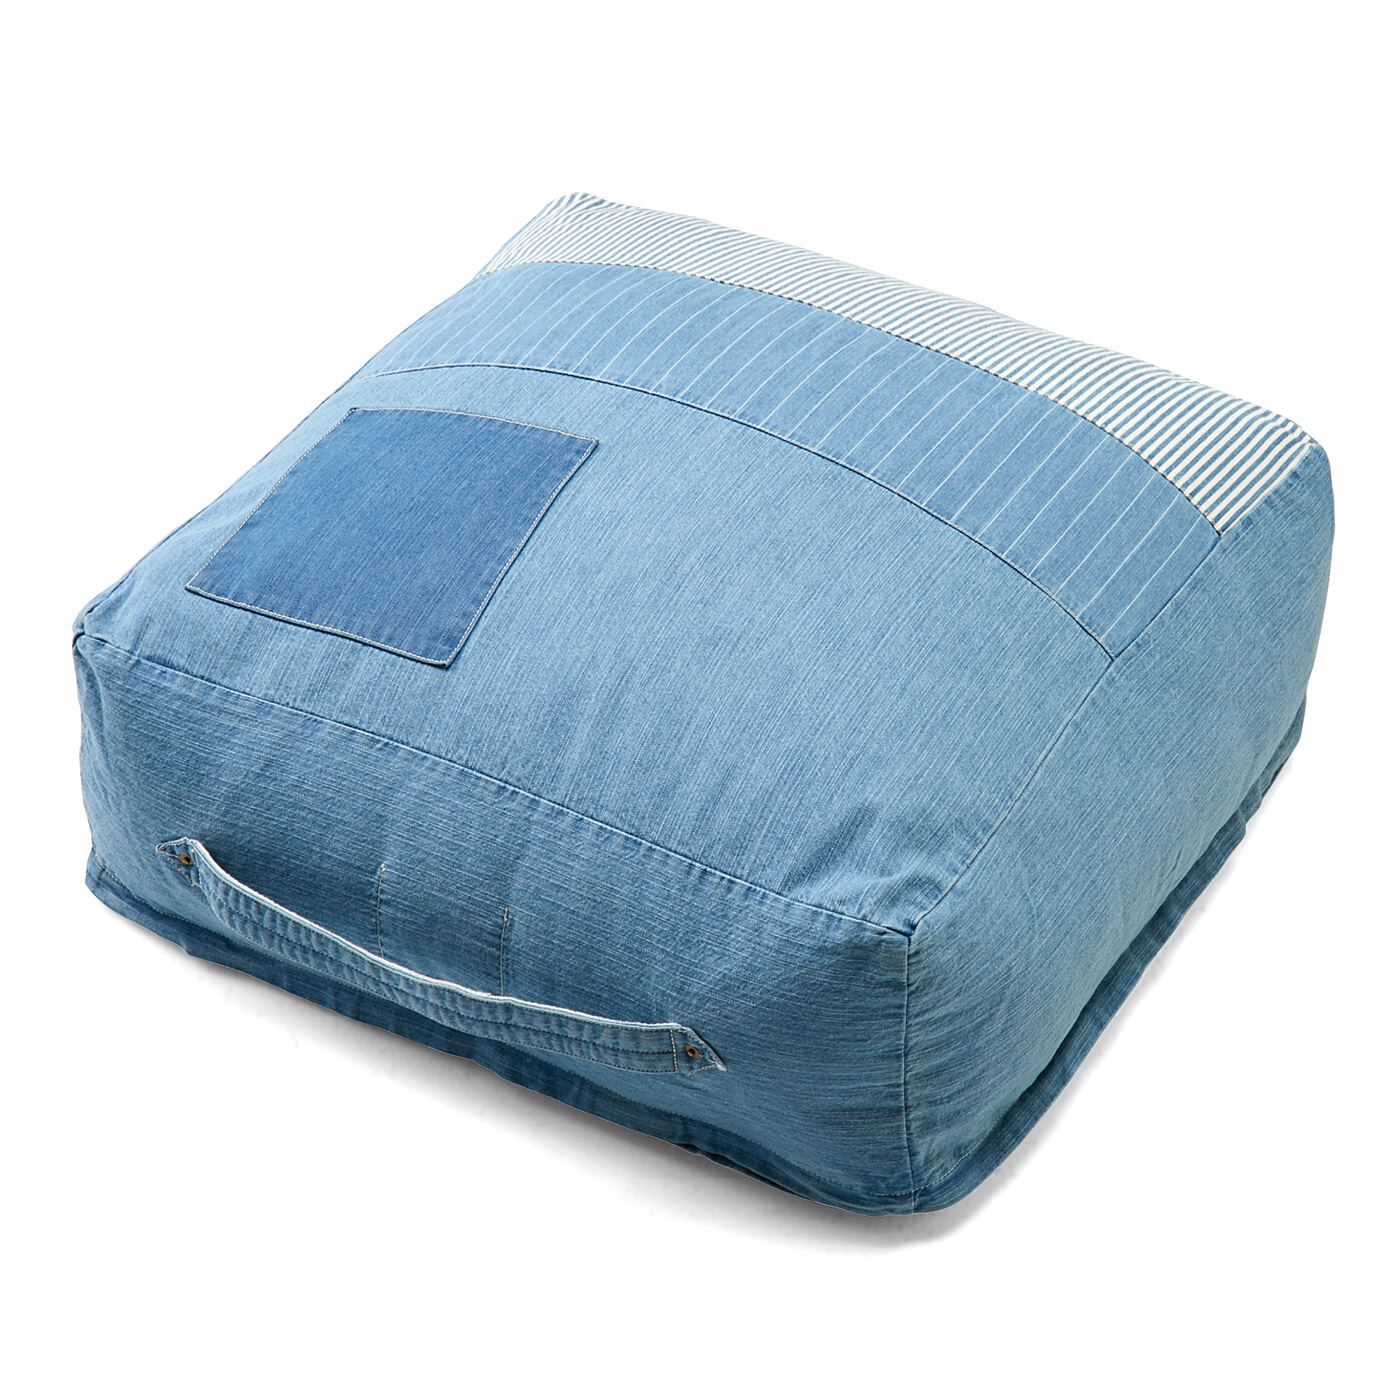 USEDo|古着屋さんで見つけたような ユーズド加工のくたくた収納デニムザブトンの会|使わない掛け布団が簡易ベッドに。